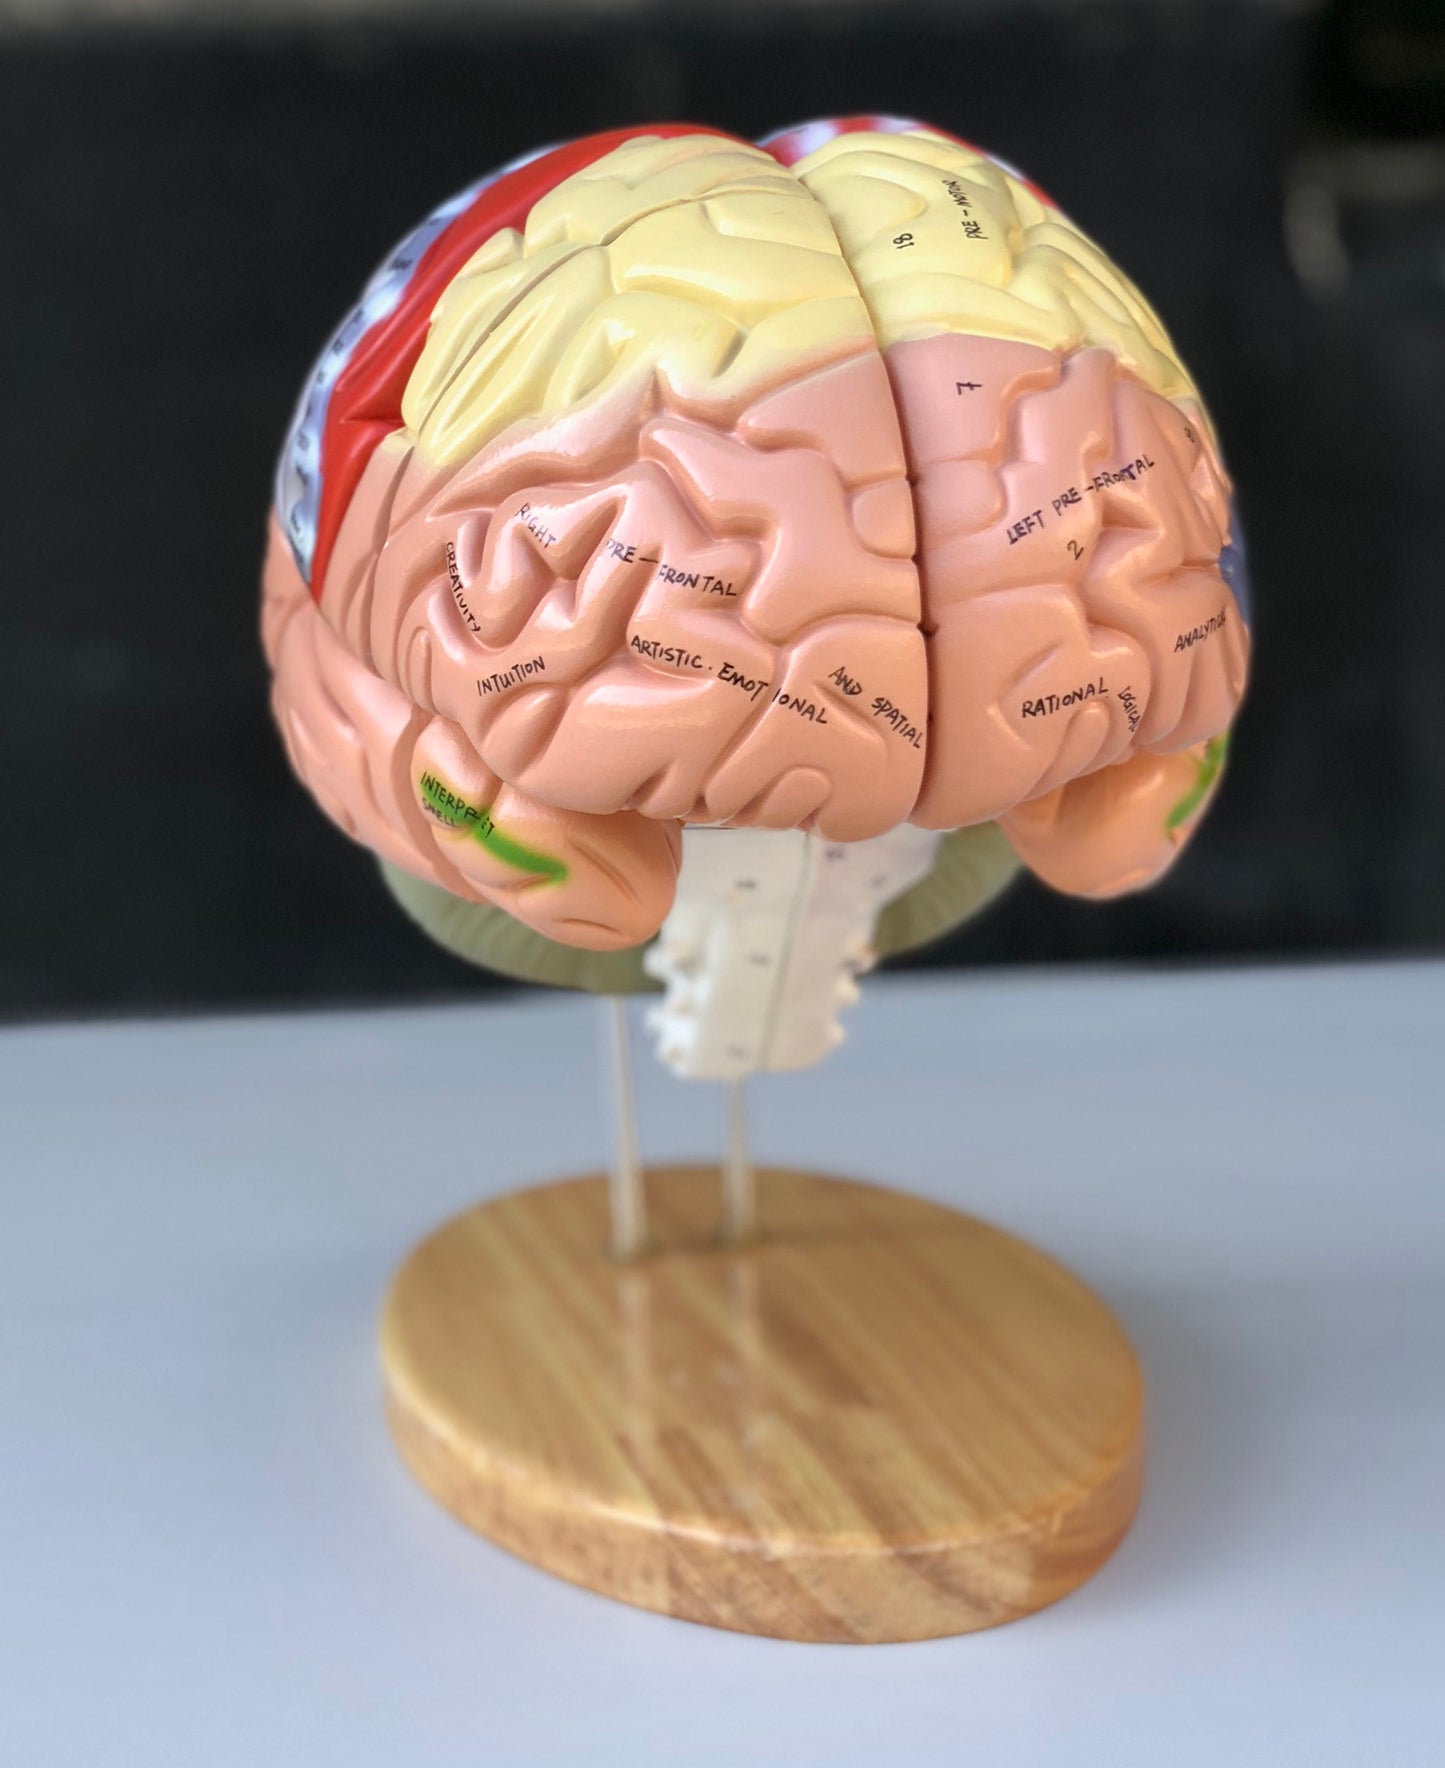 Forstørret hjernemodel med mange områder i pædagogiske farver. Kan adskilles i 4 dele